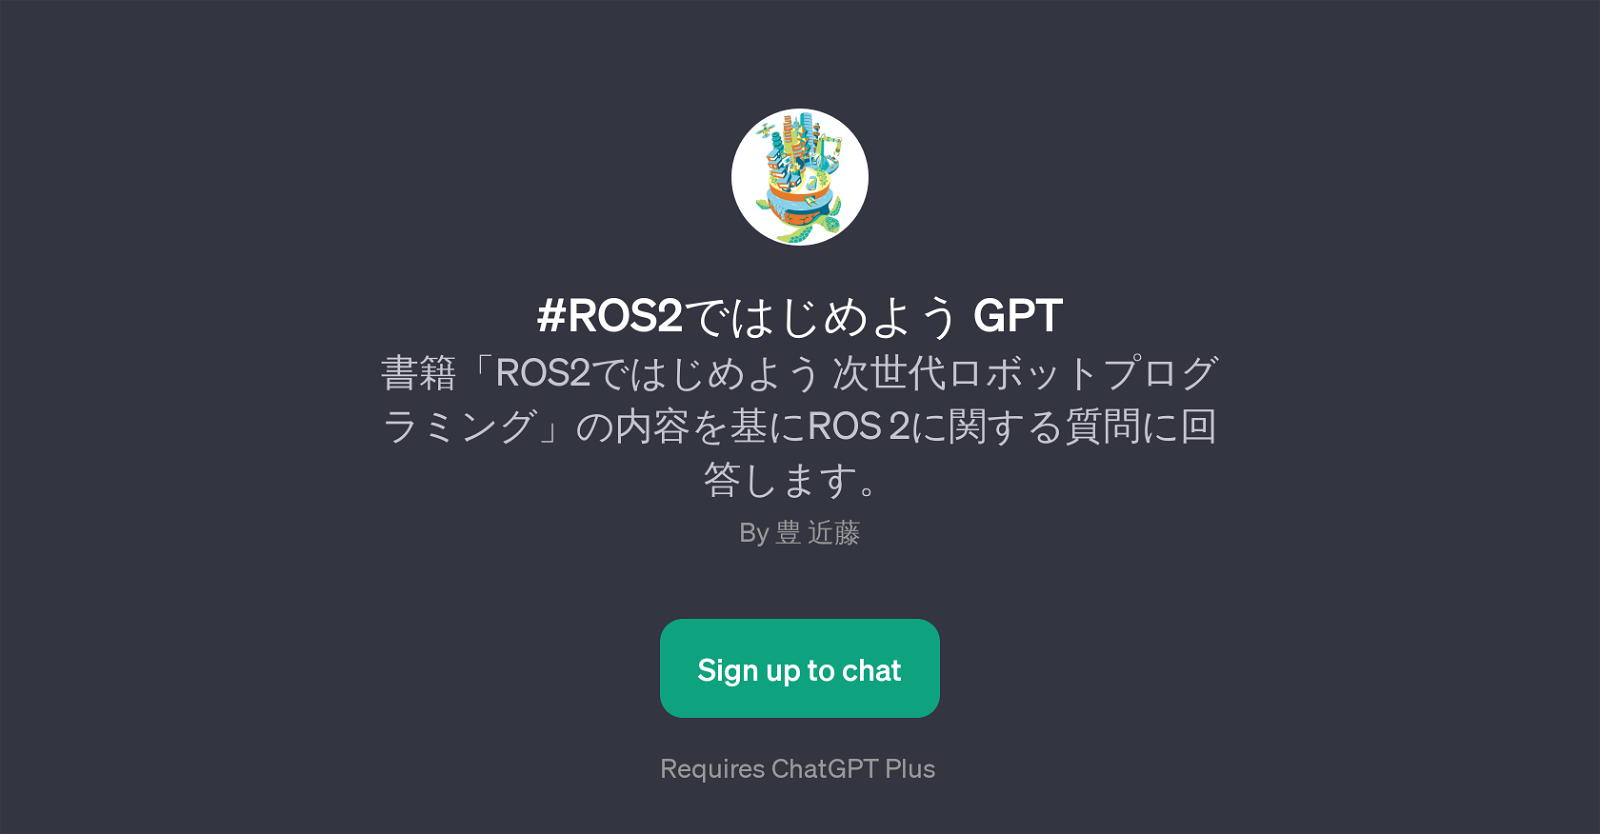 #ROS2 GPT website